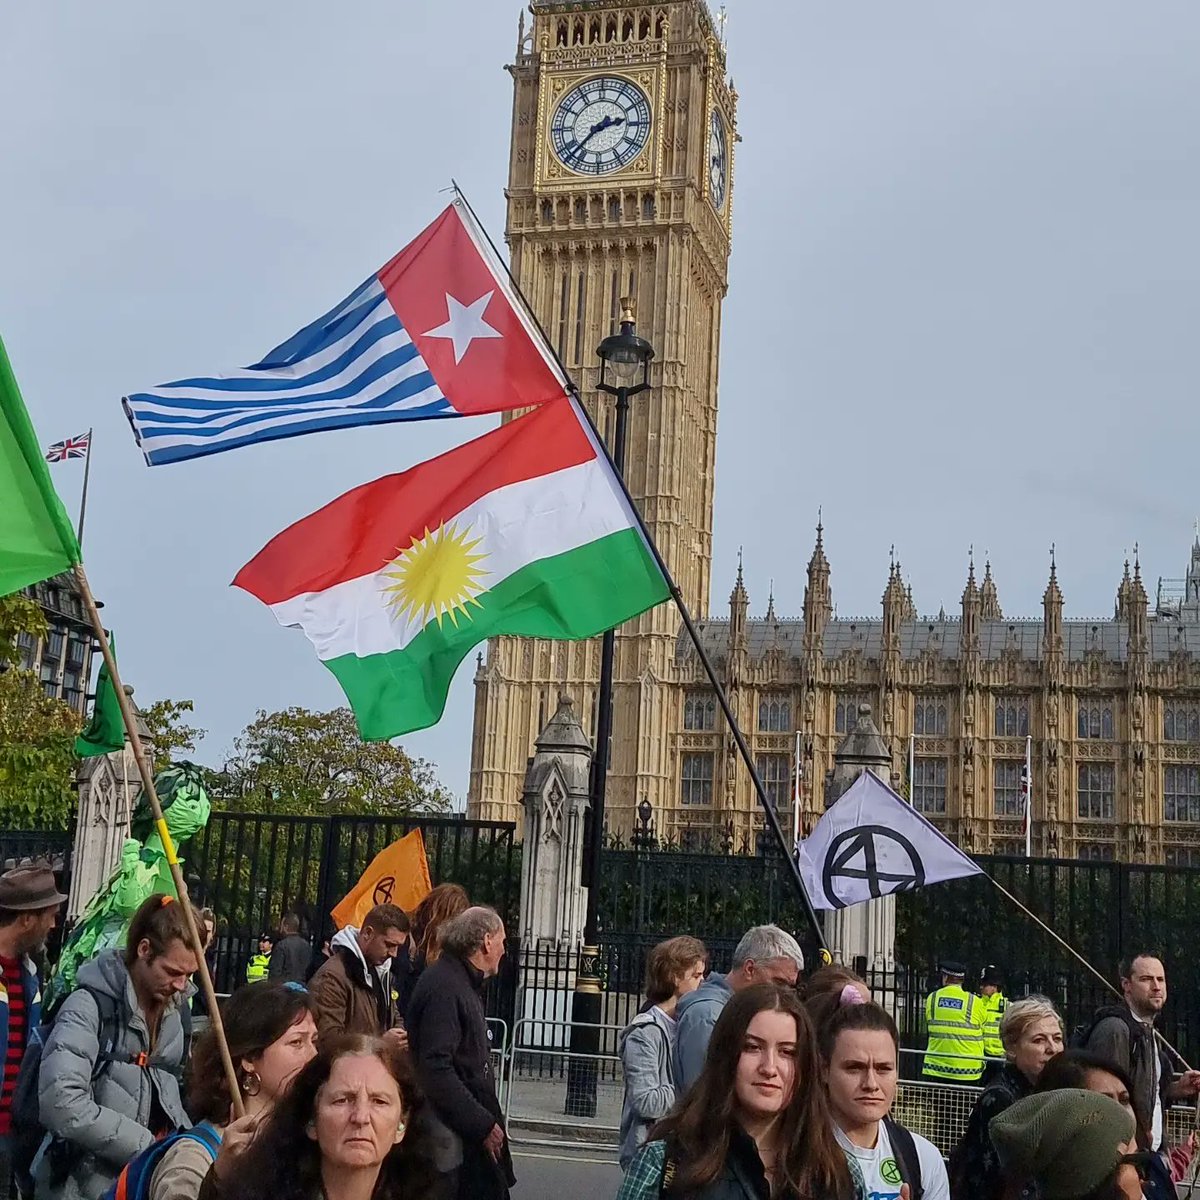 Dukungan Solidaritas Internasional semakin menduni di London 

#PemerintahSementaraWestPapua 
#PemerintahSementaraWestPapua